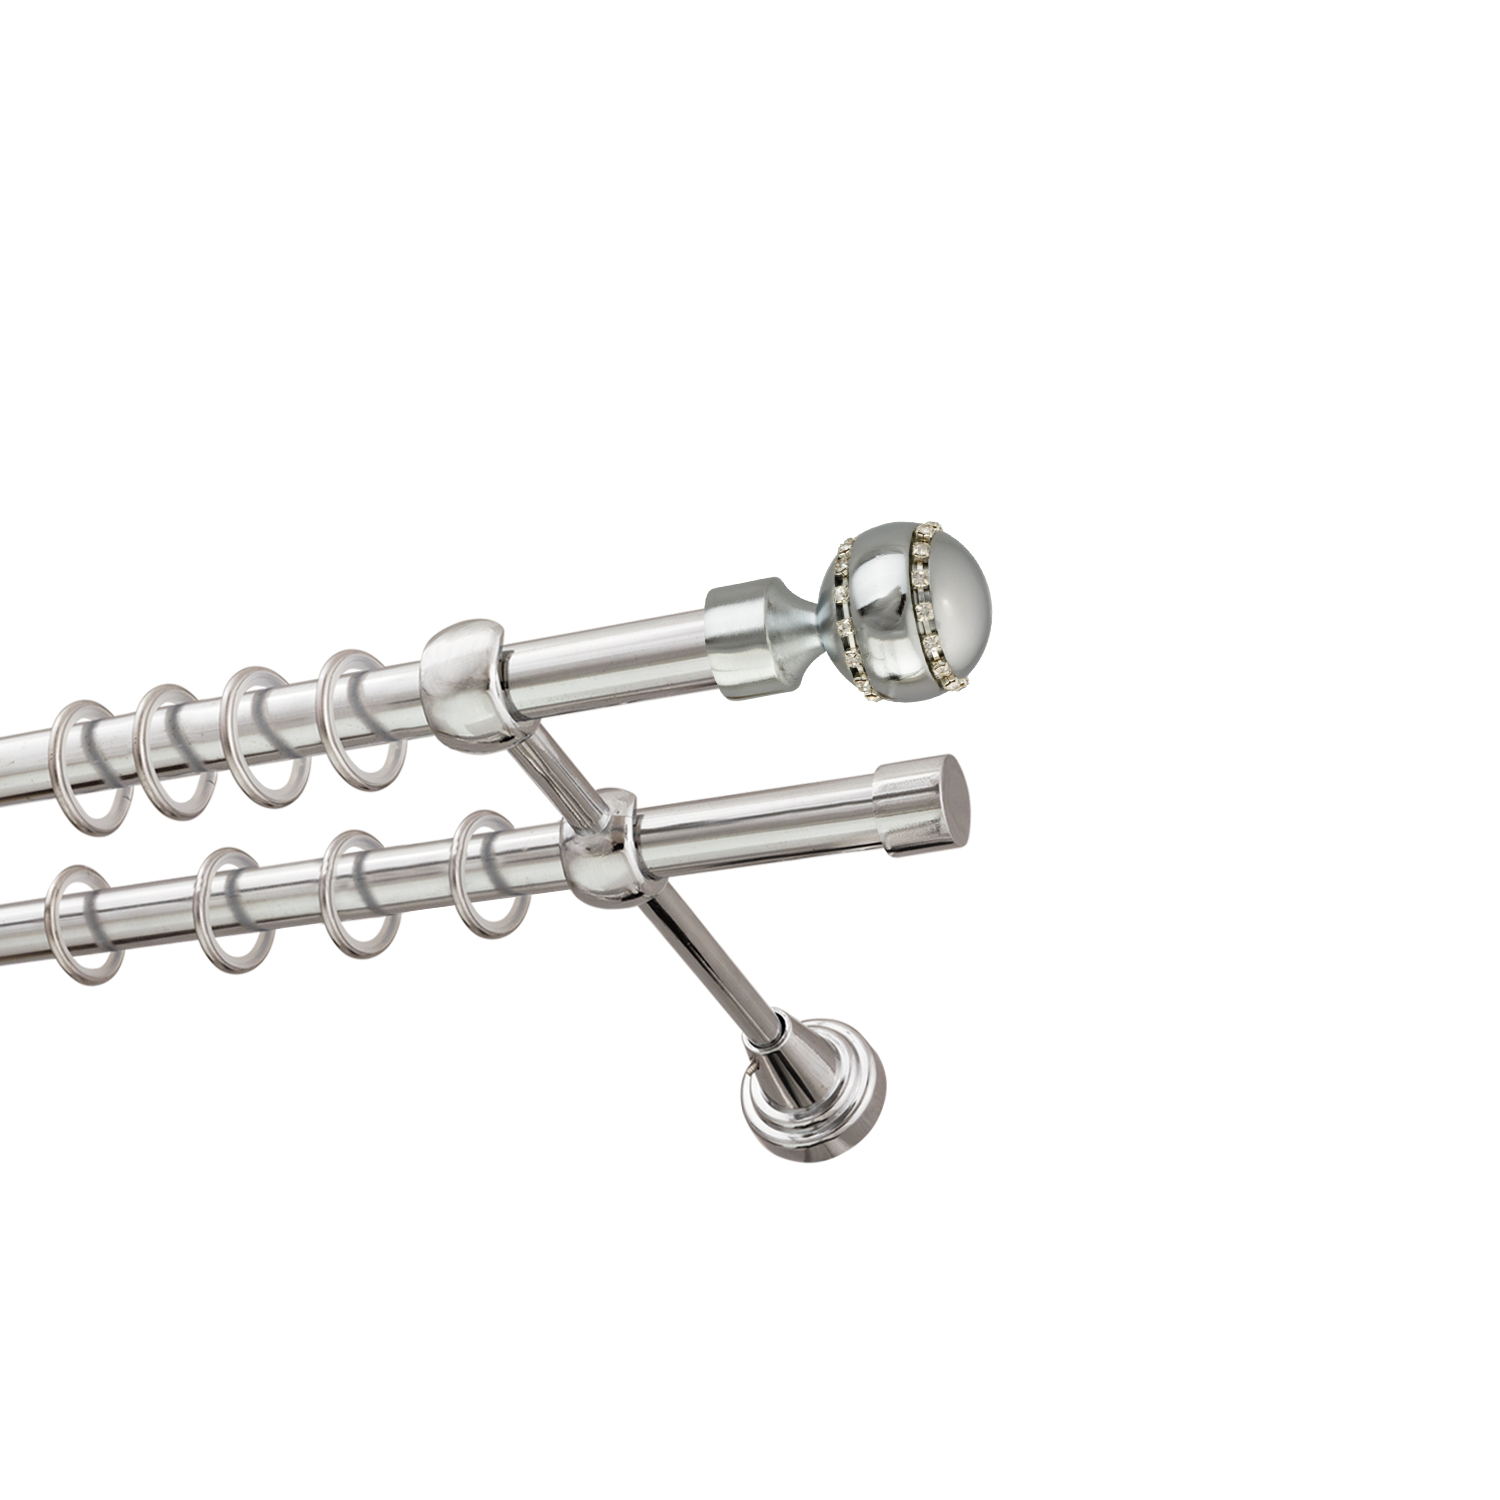 Металлический карниз для штор Модерн, двухрядный 16/16 мм, серебро, гладкая штанга, длина 300 см - фото Wikidecor.ru